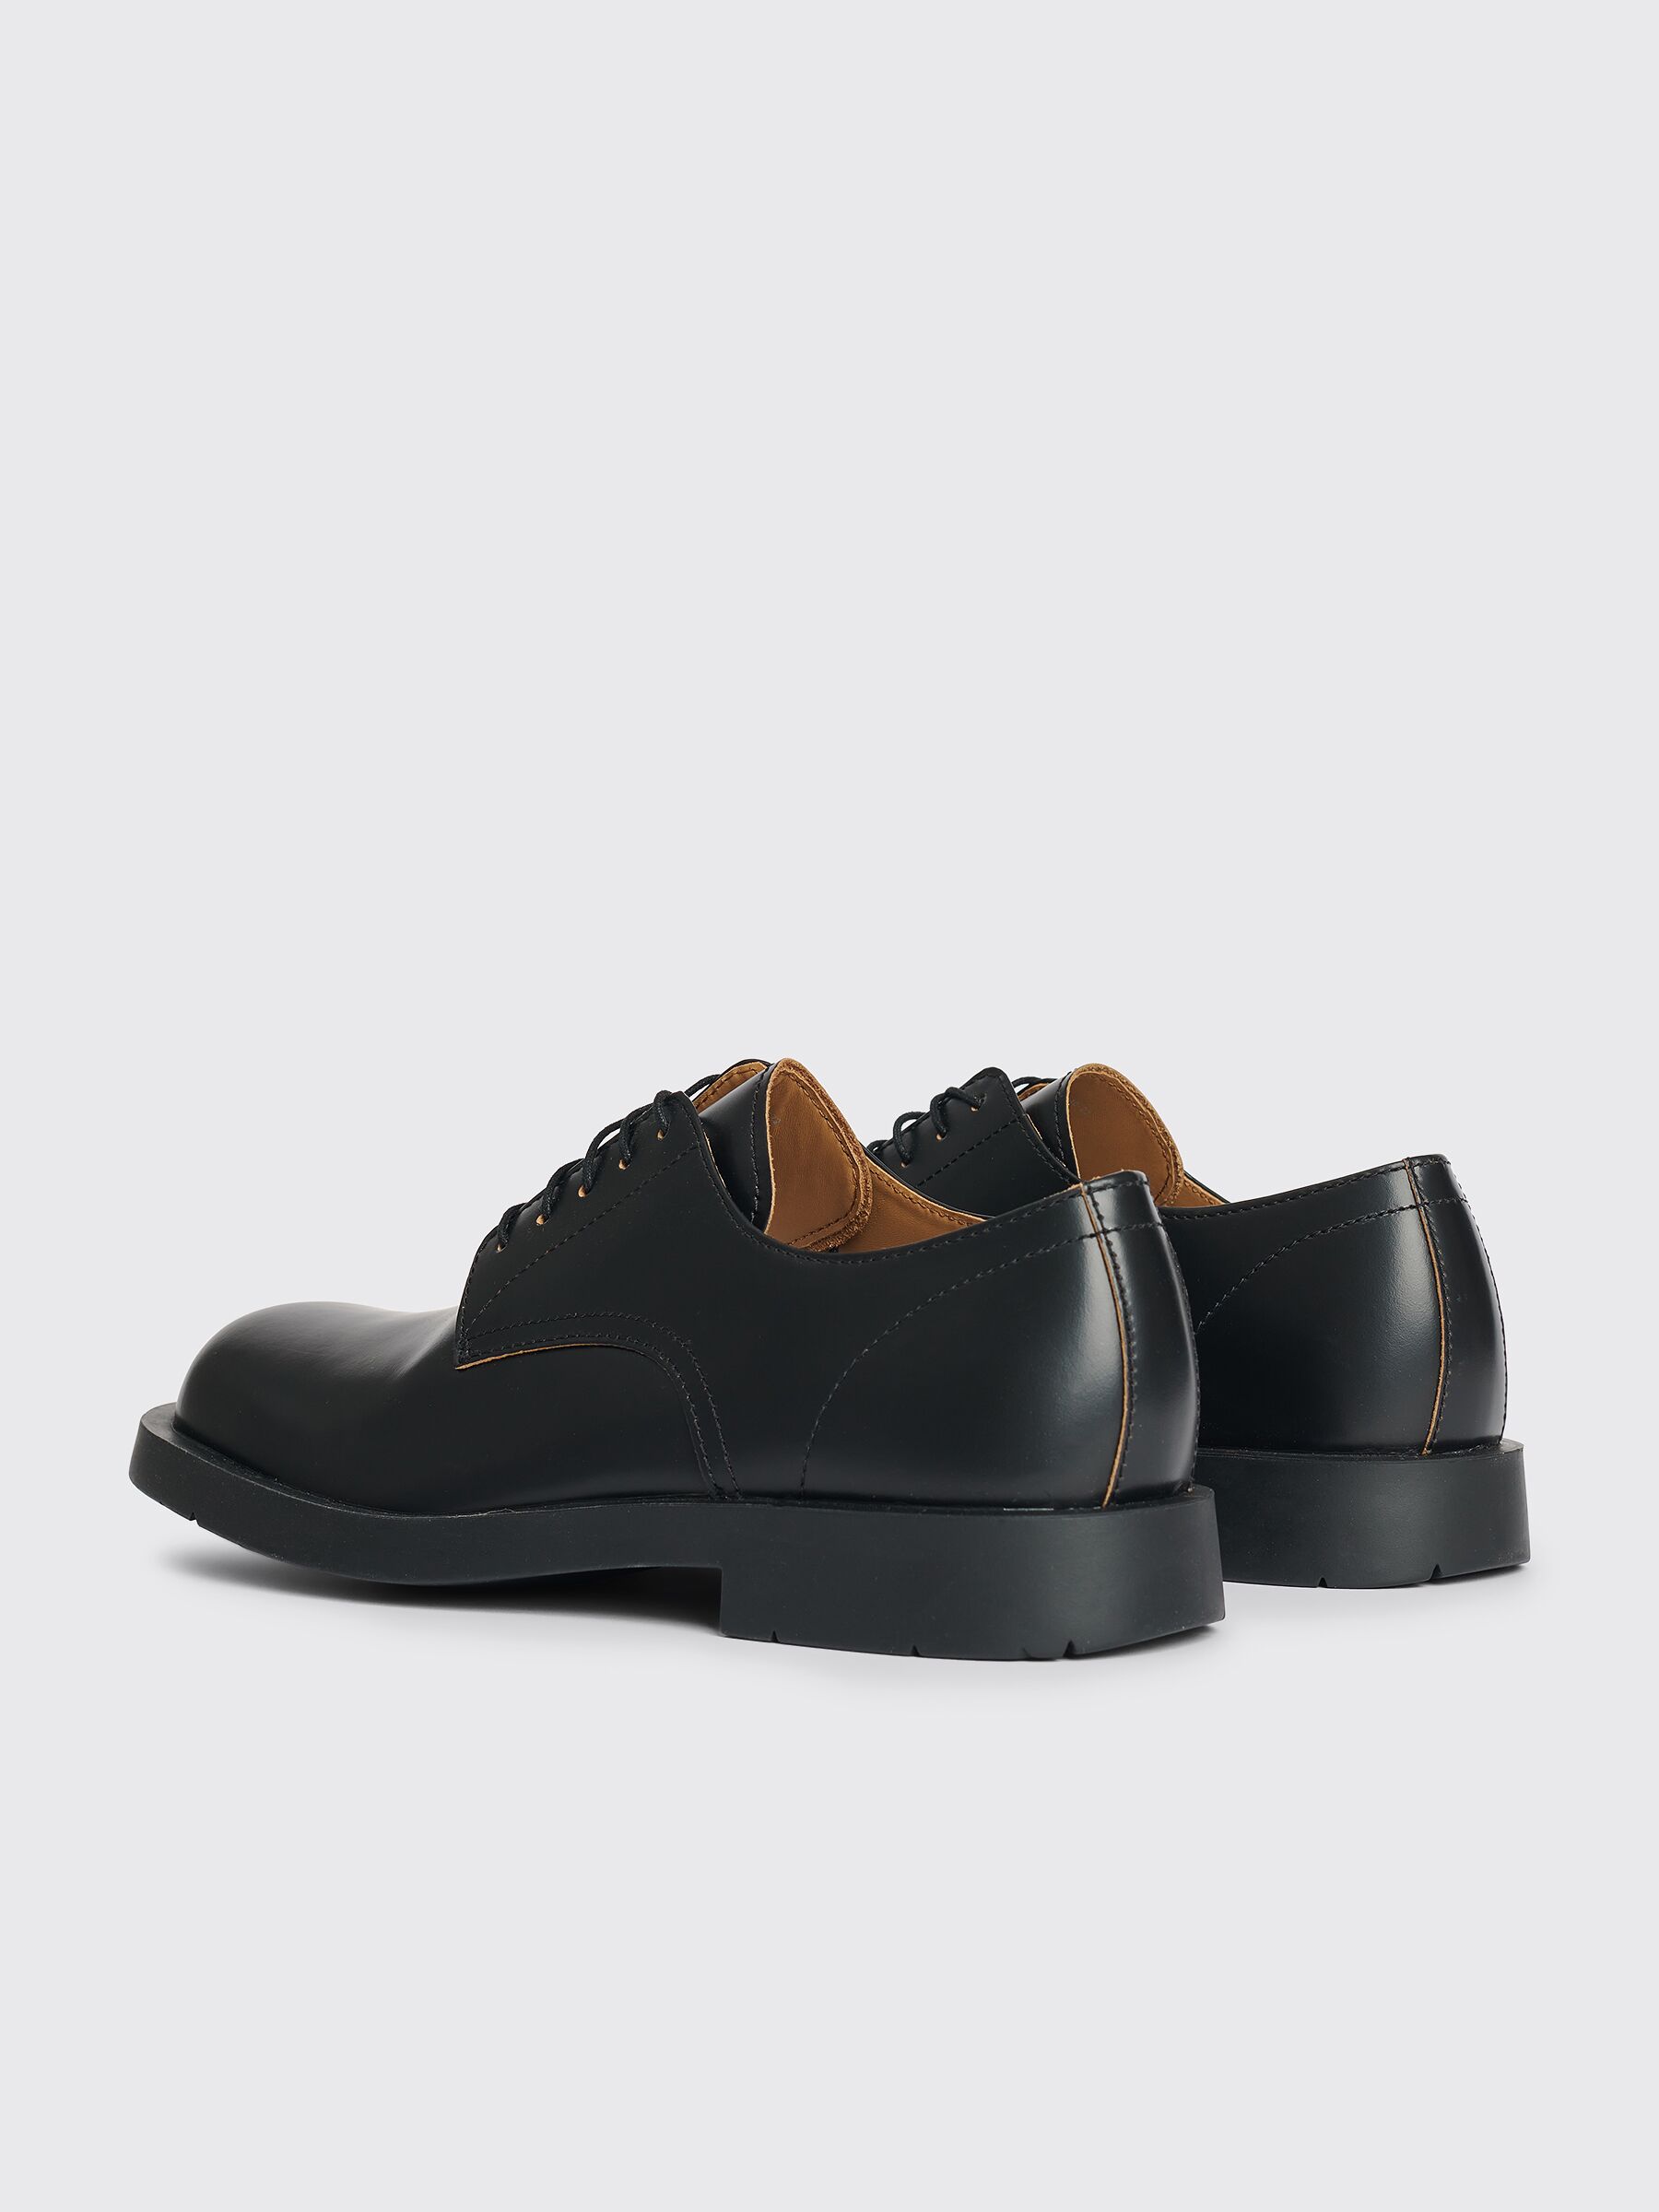 Très Bien - CamperLab Neuman Formal Shoes Black